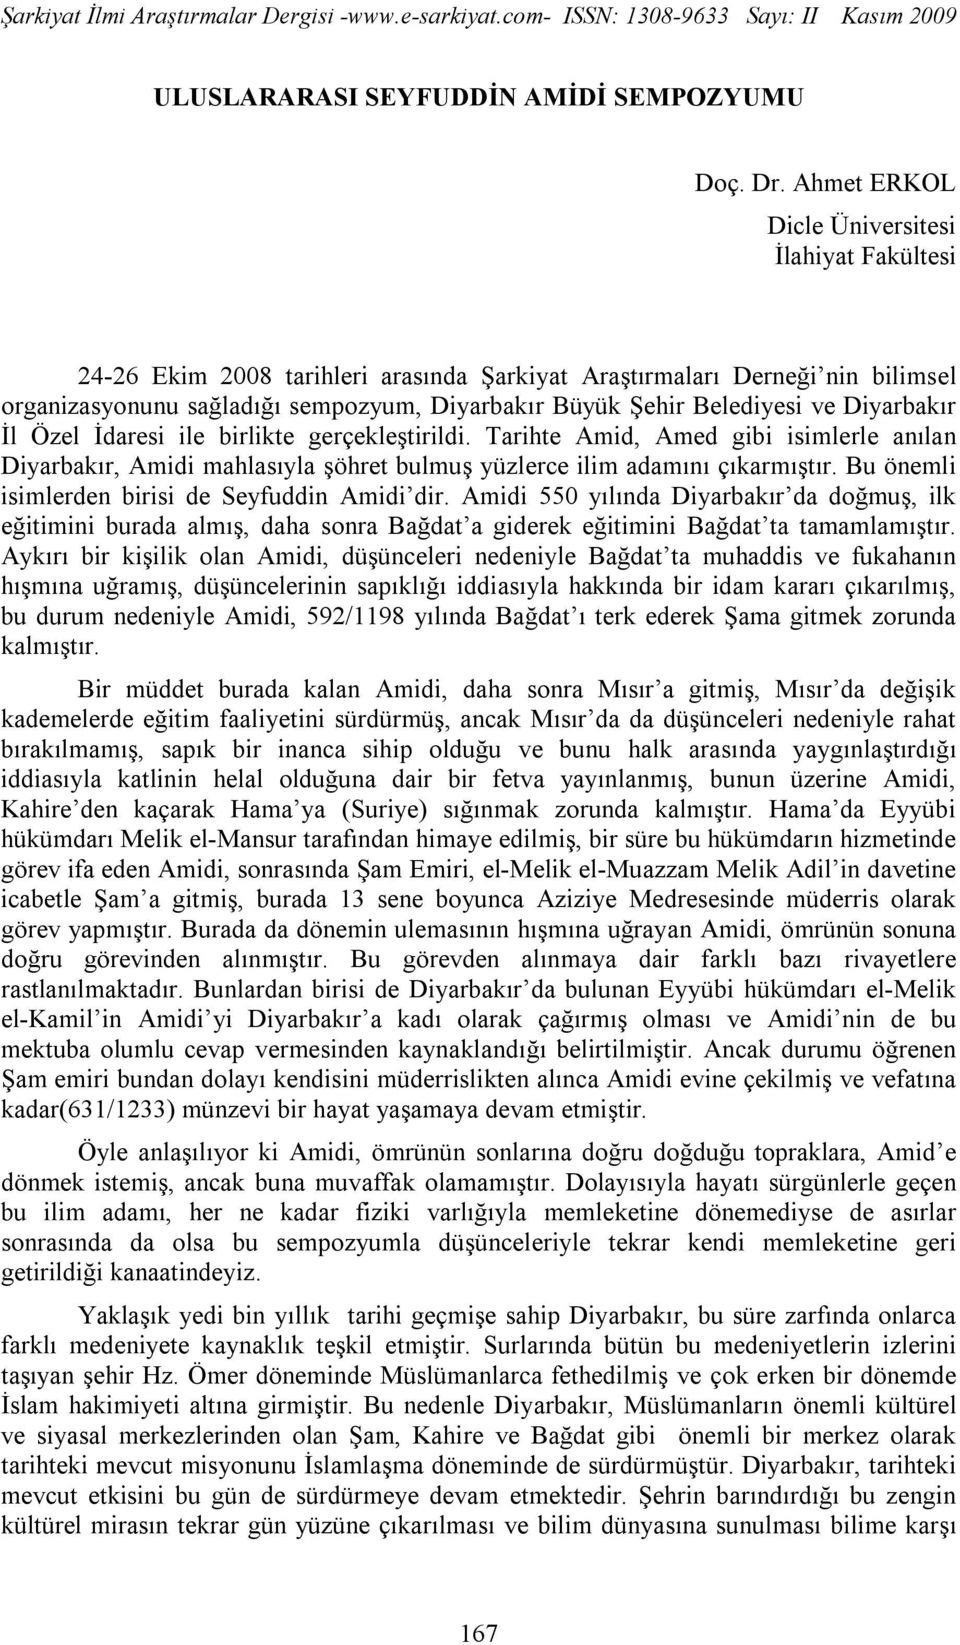 ve Diyarbakır İl Özel İdaresi ile birlikte gerçekleştirildi. Tarihte Amid, Amed gibi isimlerle anılan Diyarbakır, Amidi mahlasıyla şöhret bulmuş yüzlerce ilim adamını çıkarmıştır.